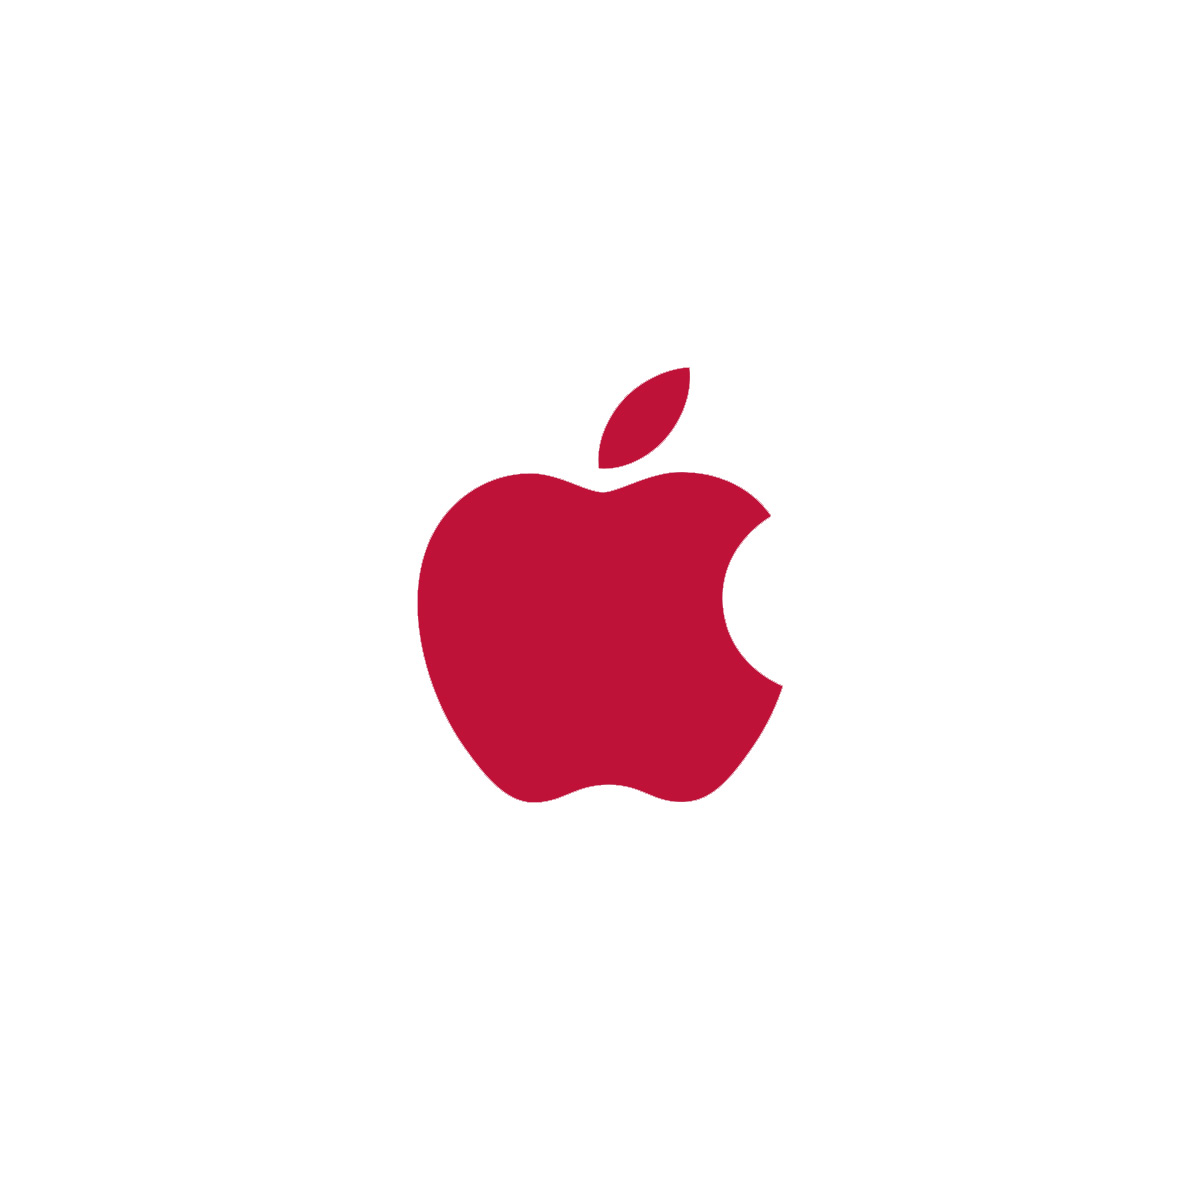 Red Apple Wallpaper For Mobile